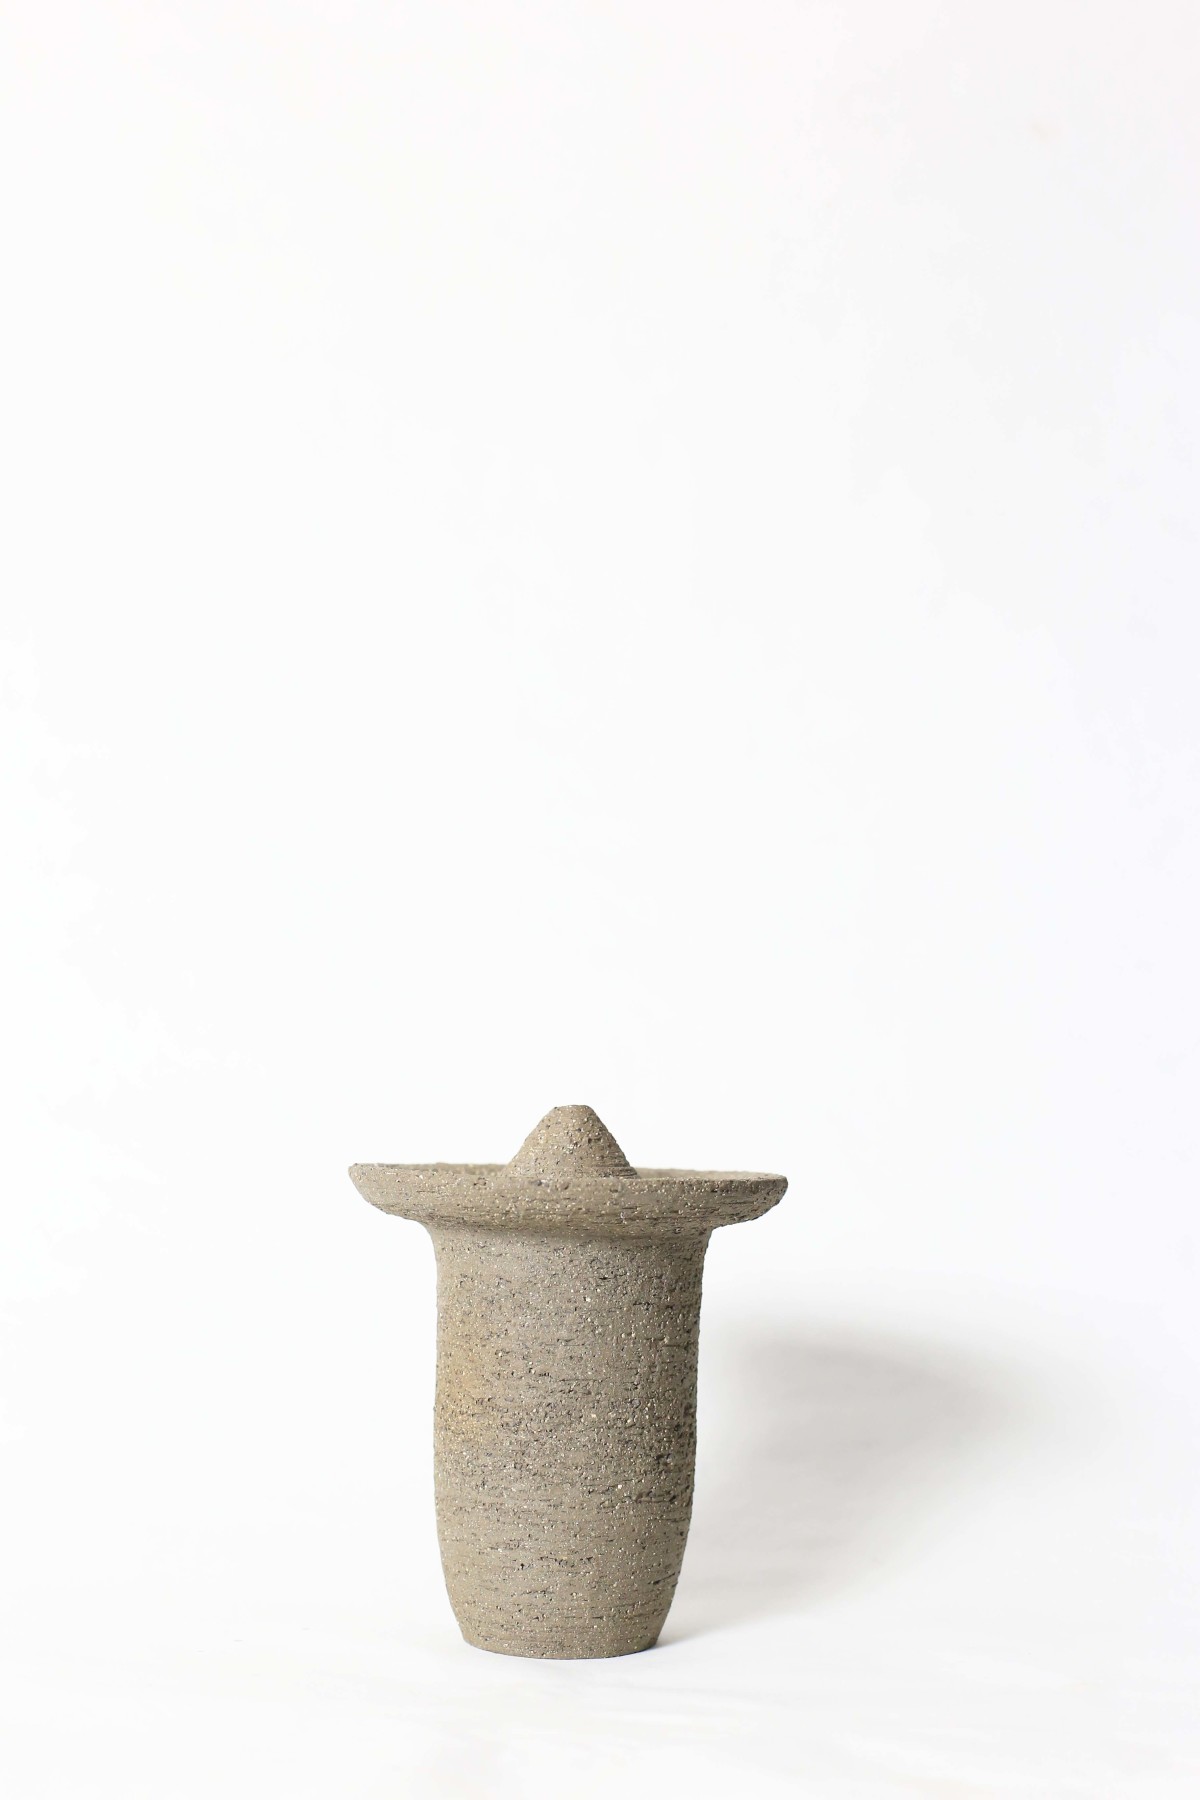 Ufo shaped gray ceramic vase on a white background 1